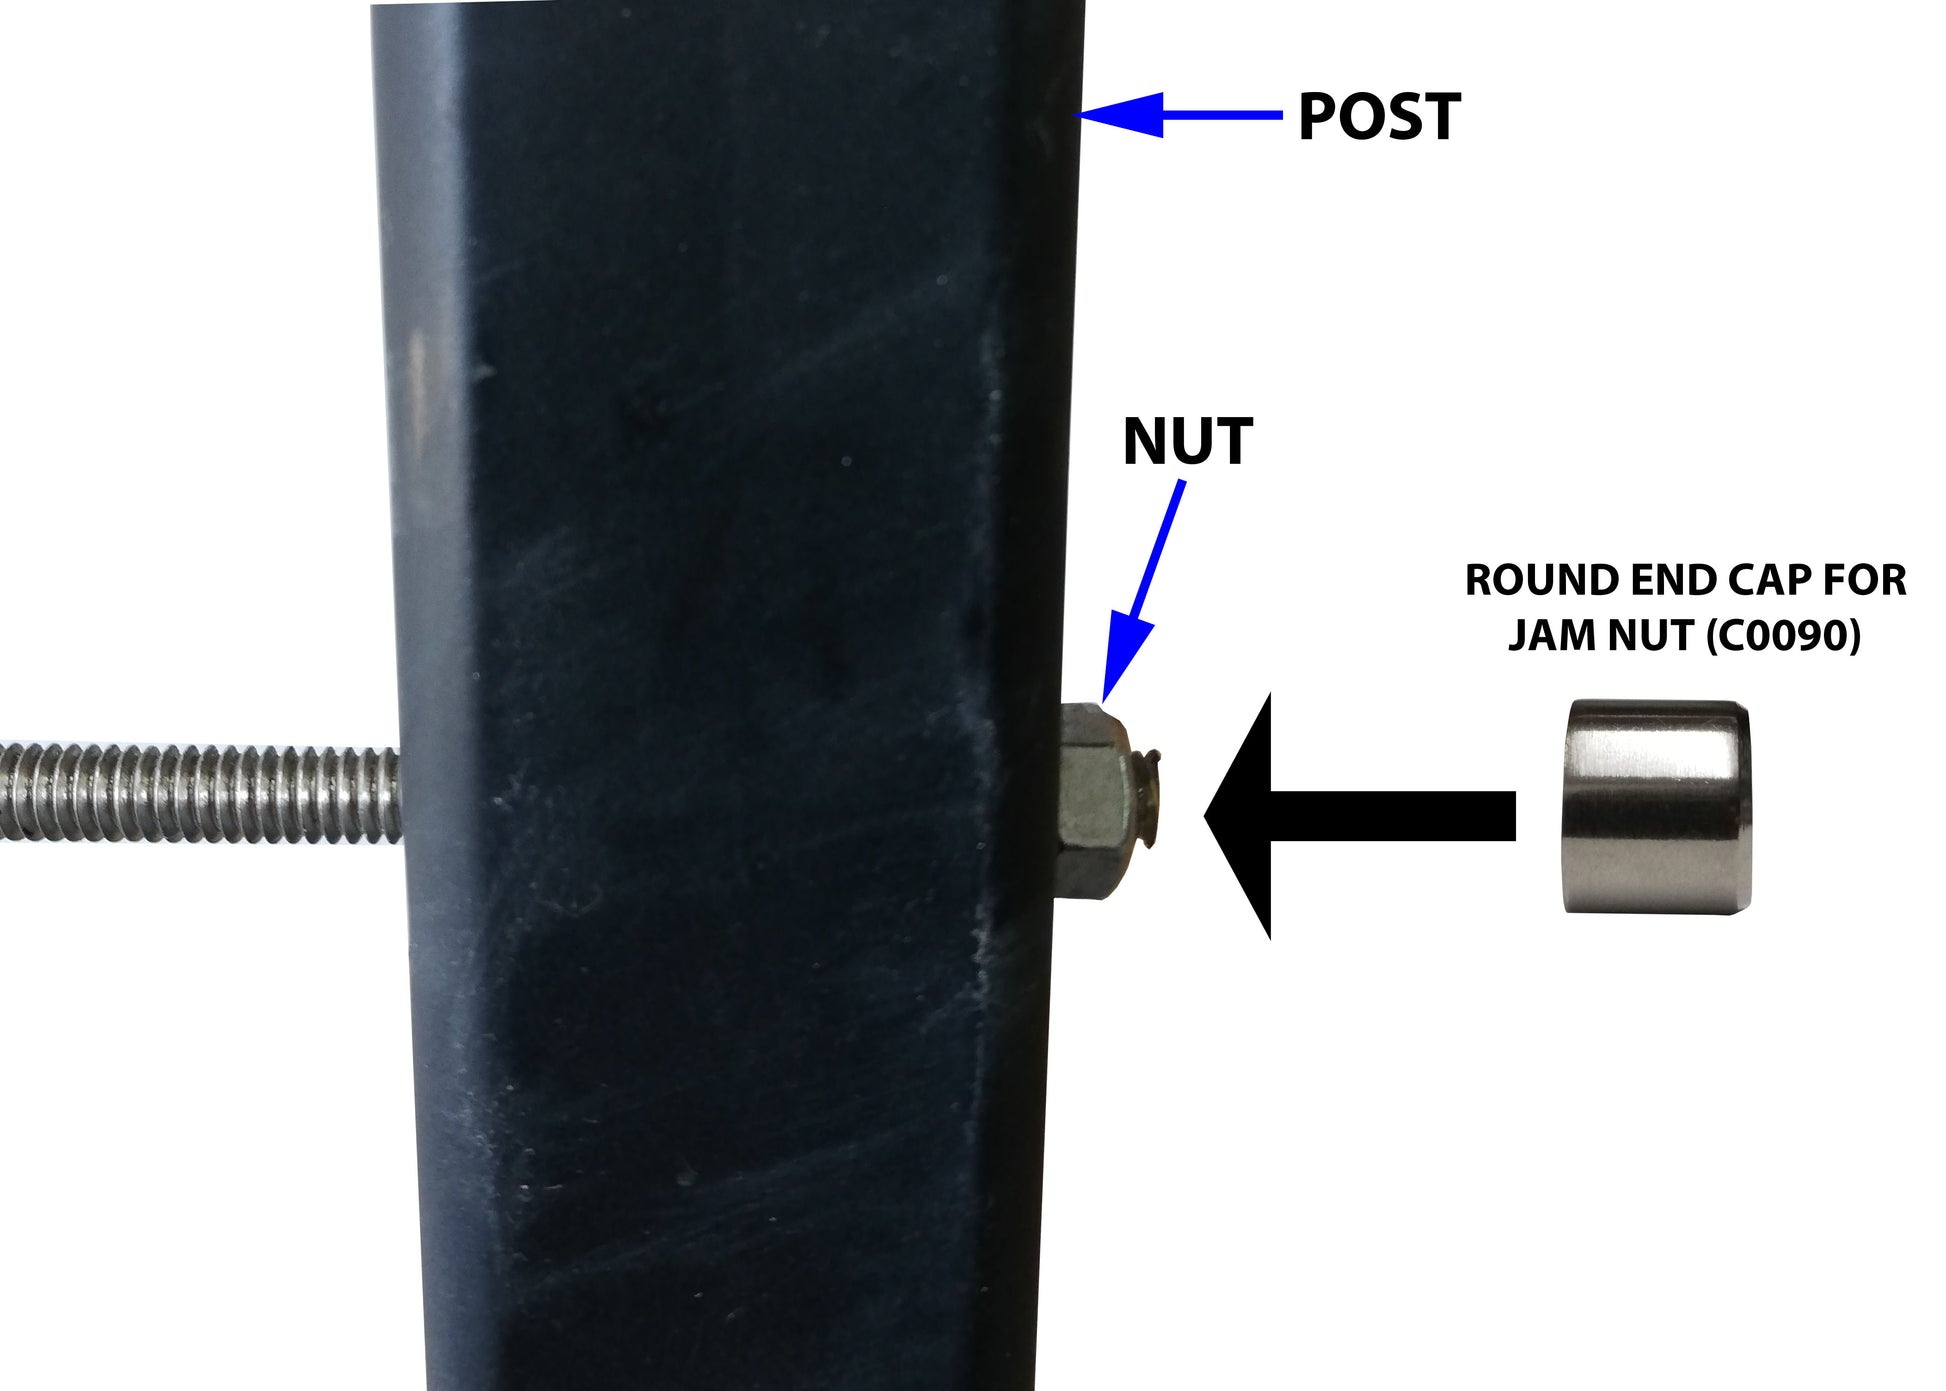 Round End Cap for Jam Nut (C0090) - SHEMONICO